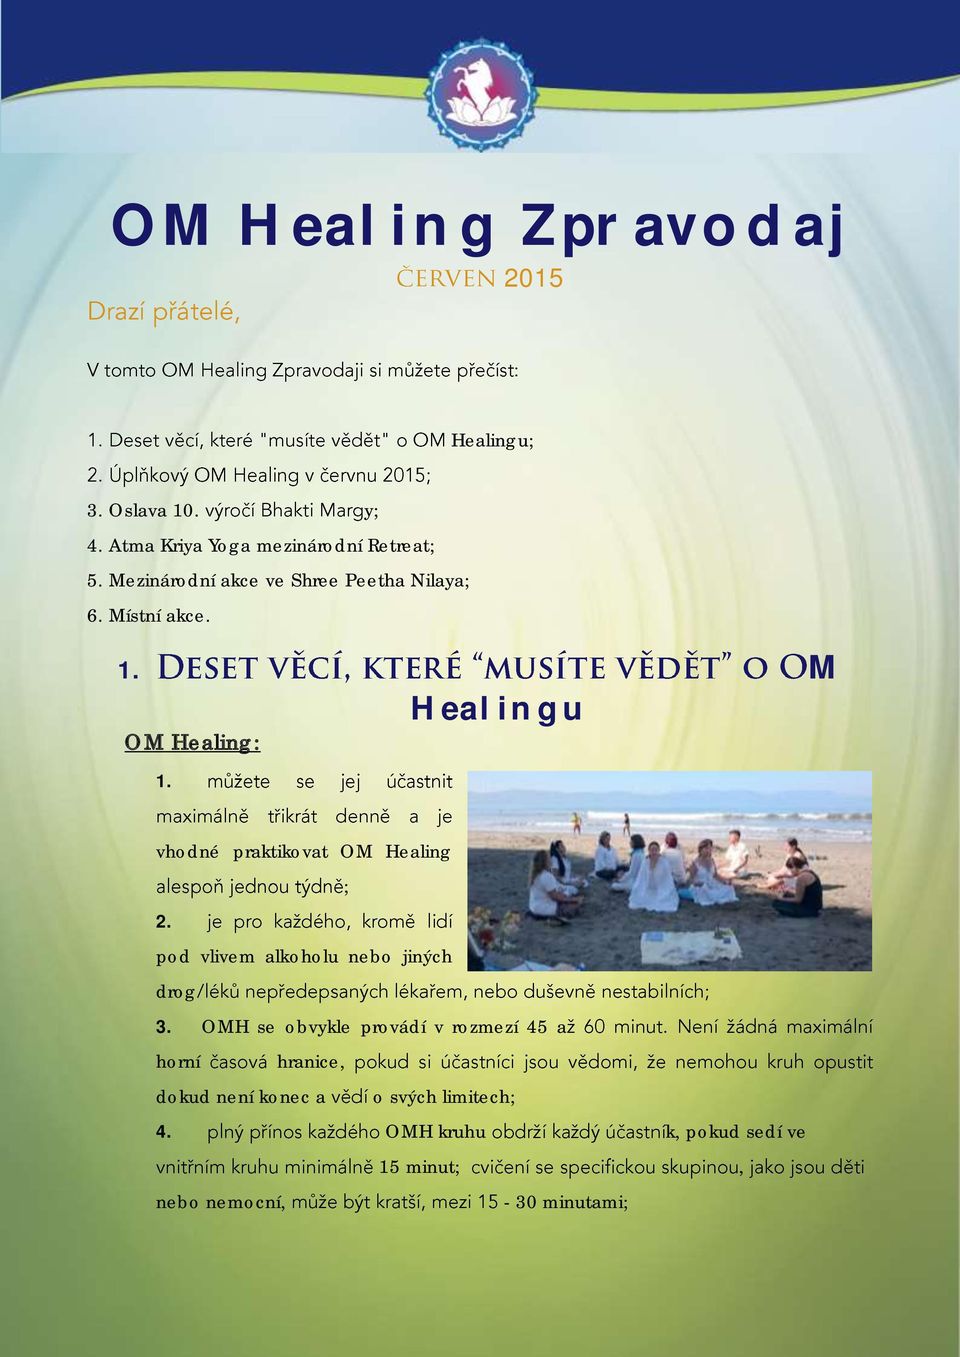 vhodné praktikovat OM Healing ; 2. pod vlivem alkoholu nebo jiných drog 3.